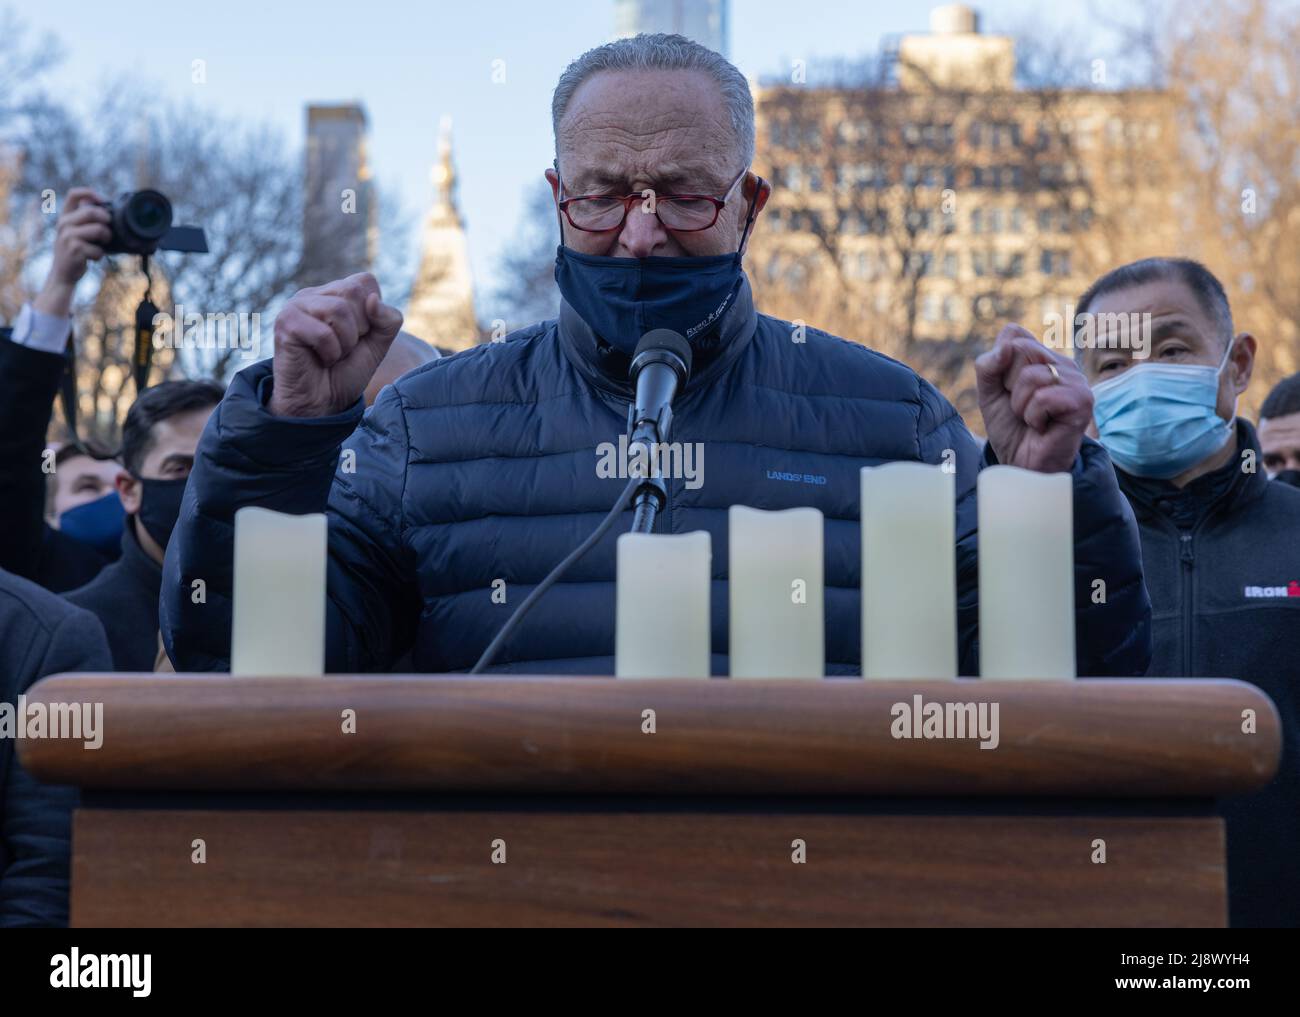 NEW YORK, N.Y. – 19 marzo 2021: Chuck Schumer, leader della maggioranza del Senato degli Stati Uniti, si rivolge a una veglia per le vittime della violenza anti-asiatica. Foto Stock